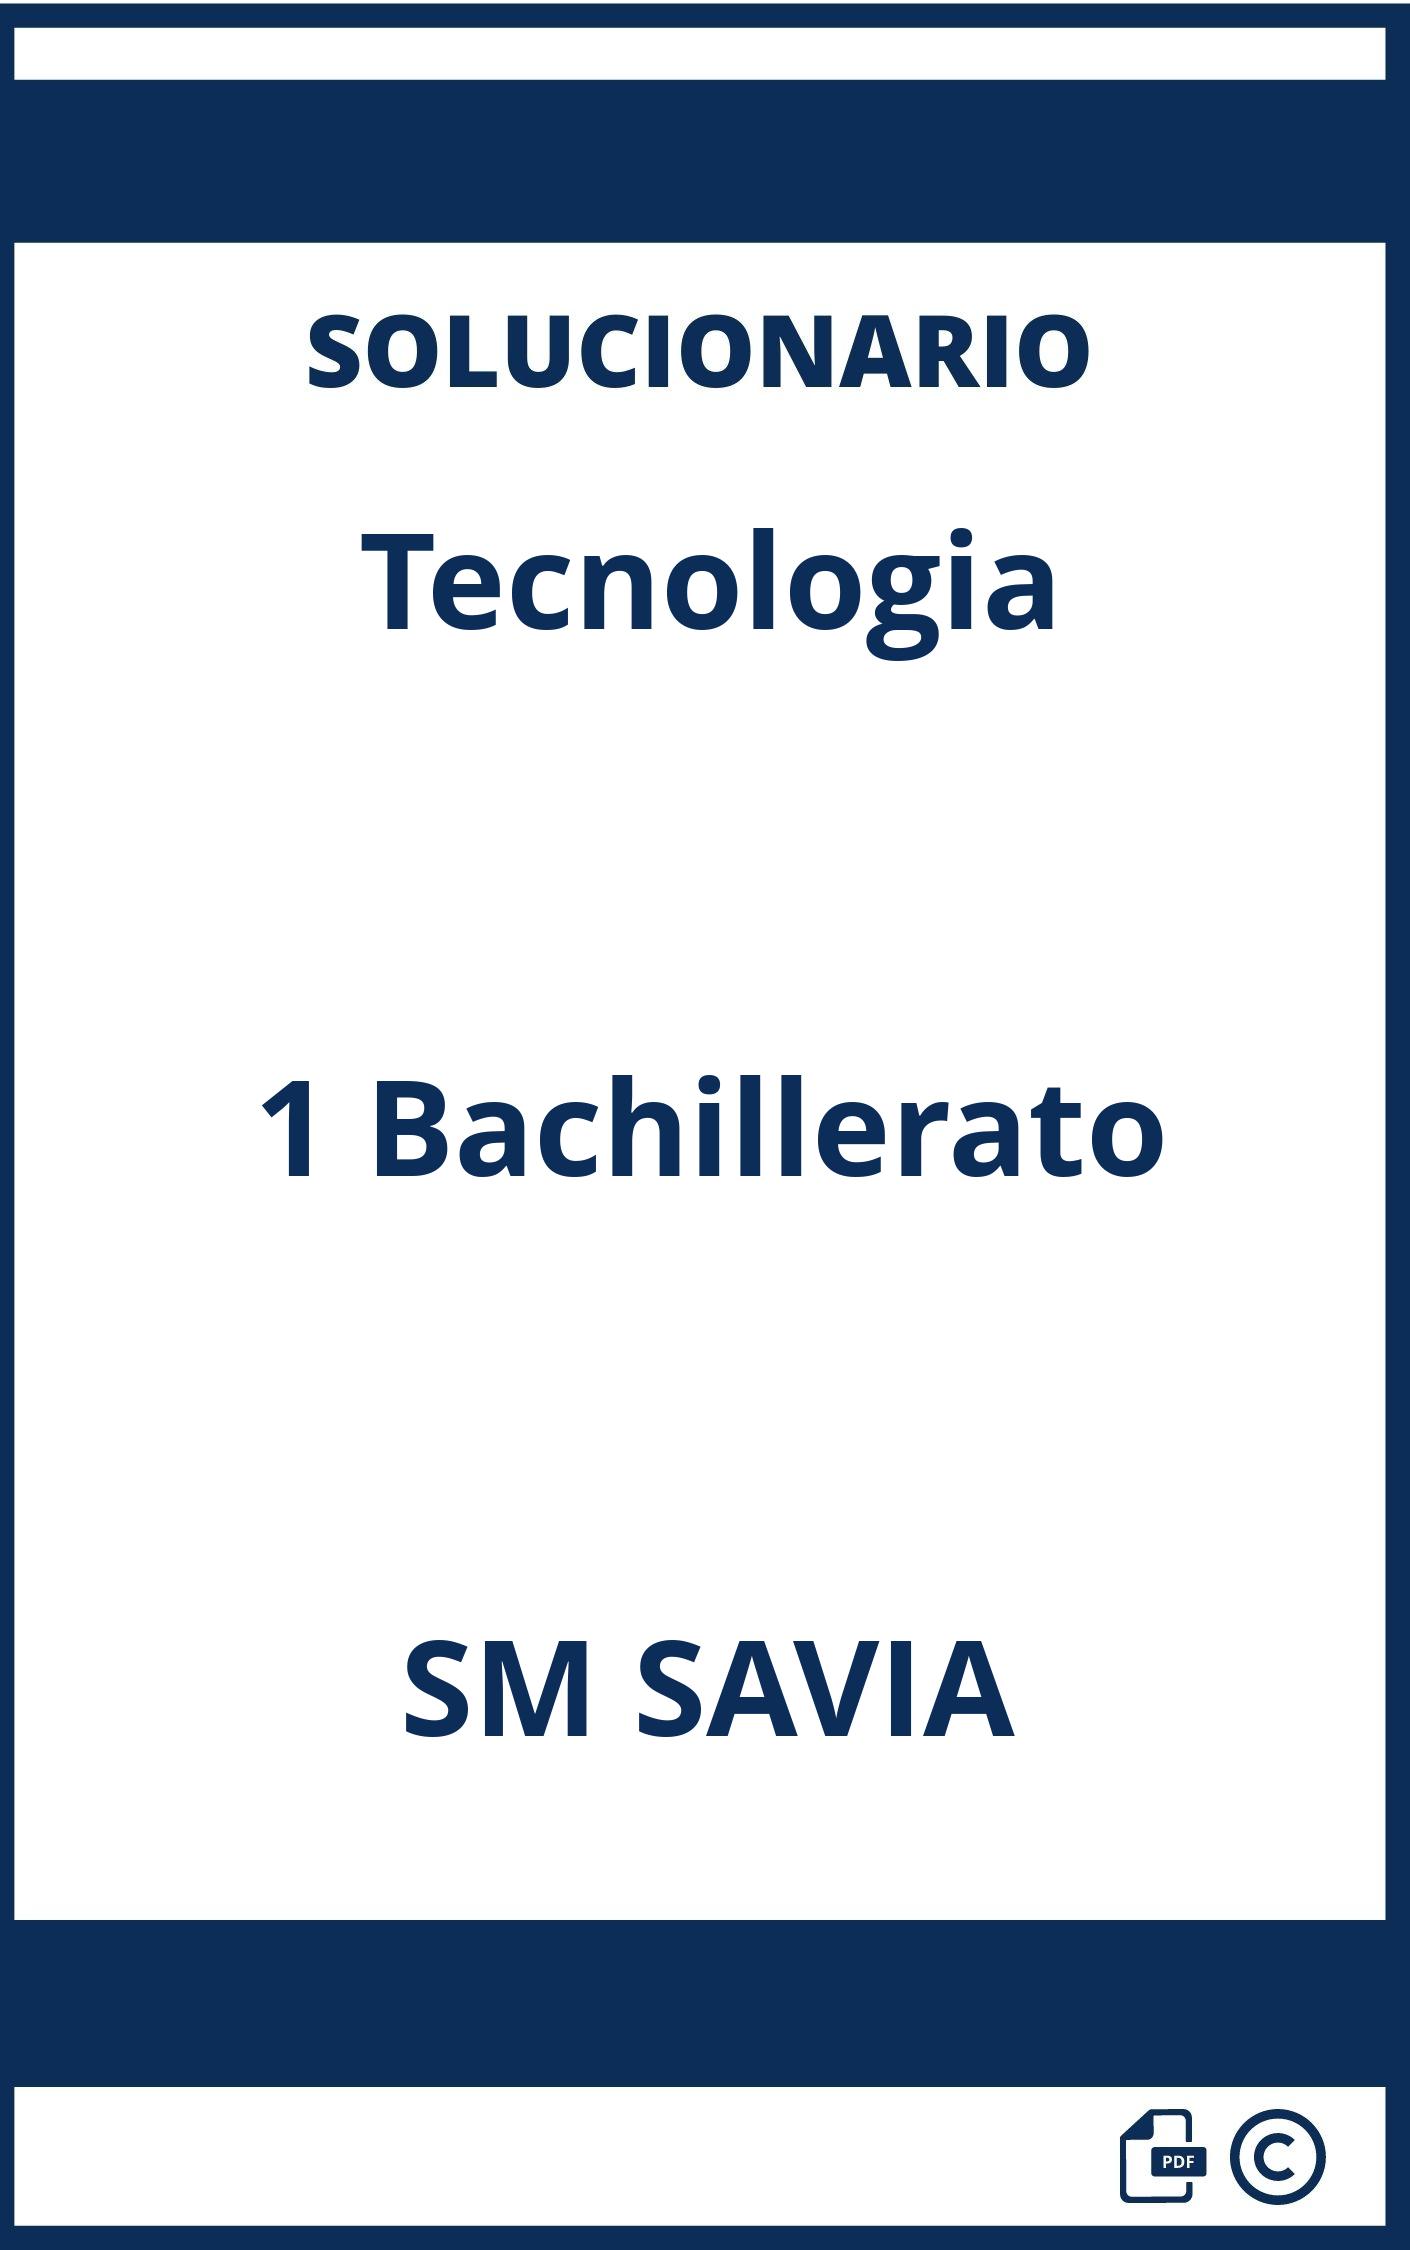 Solucionario Tecnologia 1 Bachillerato SM SAVIA